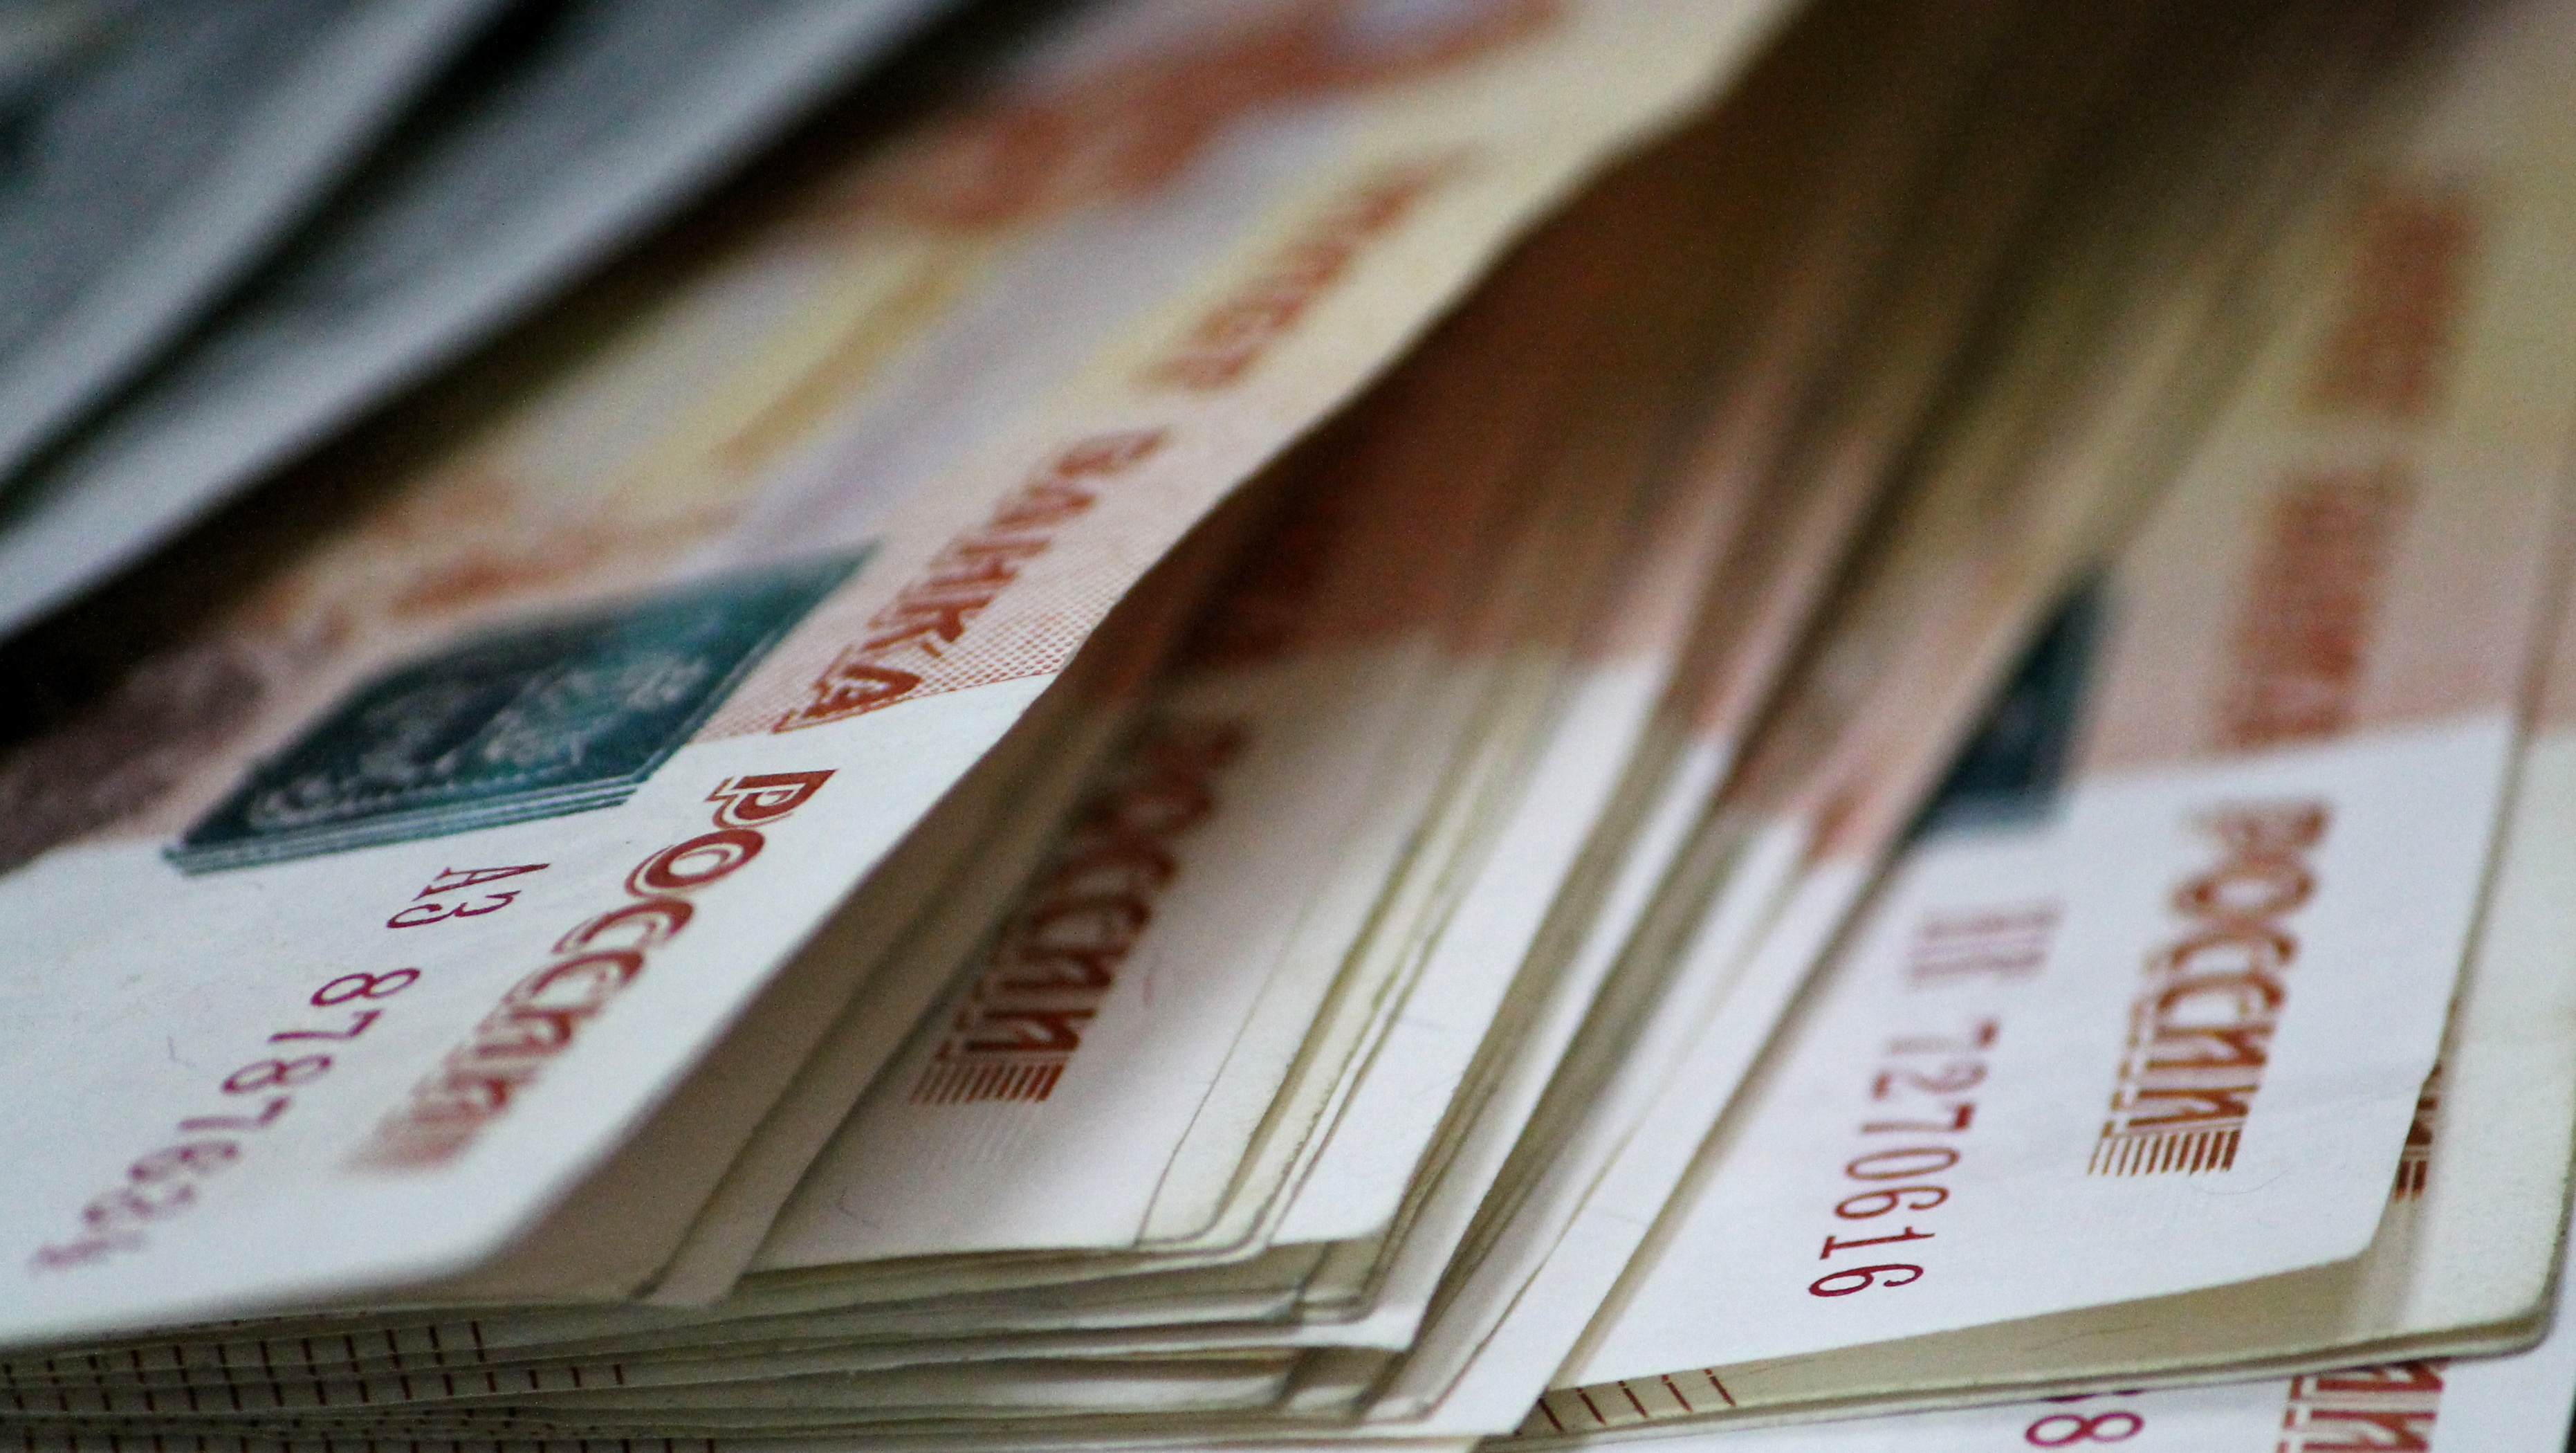 Тюменские врачи стали зарабатывать меньше — доходы упали на 4 тысячи рублей